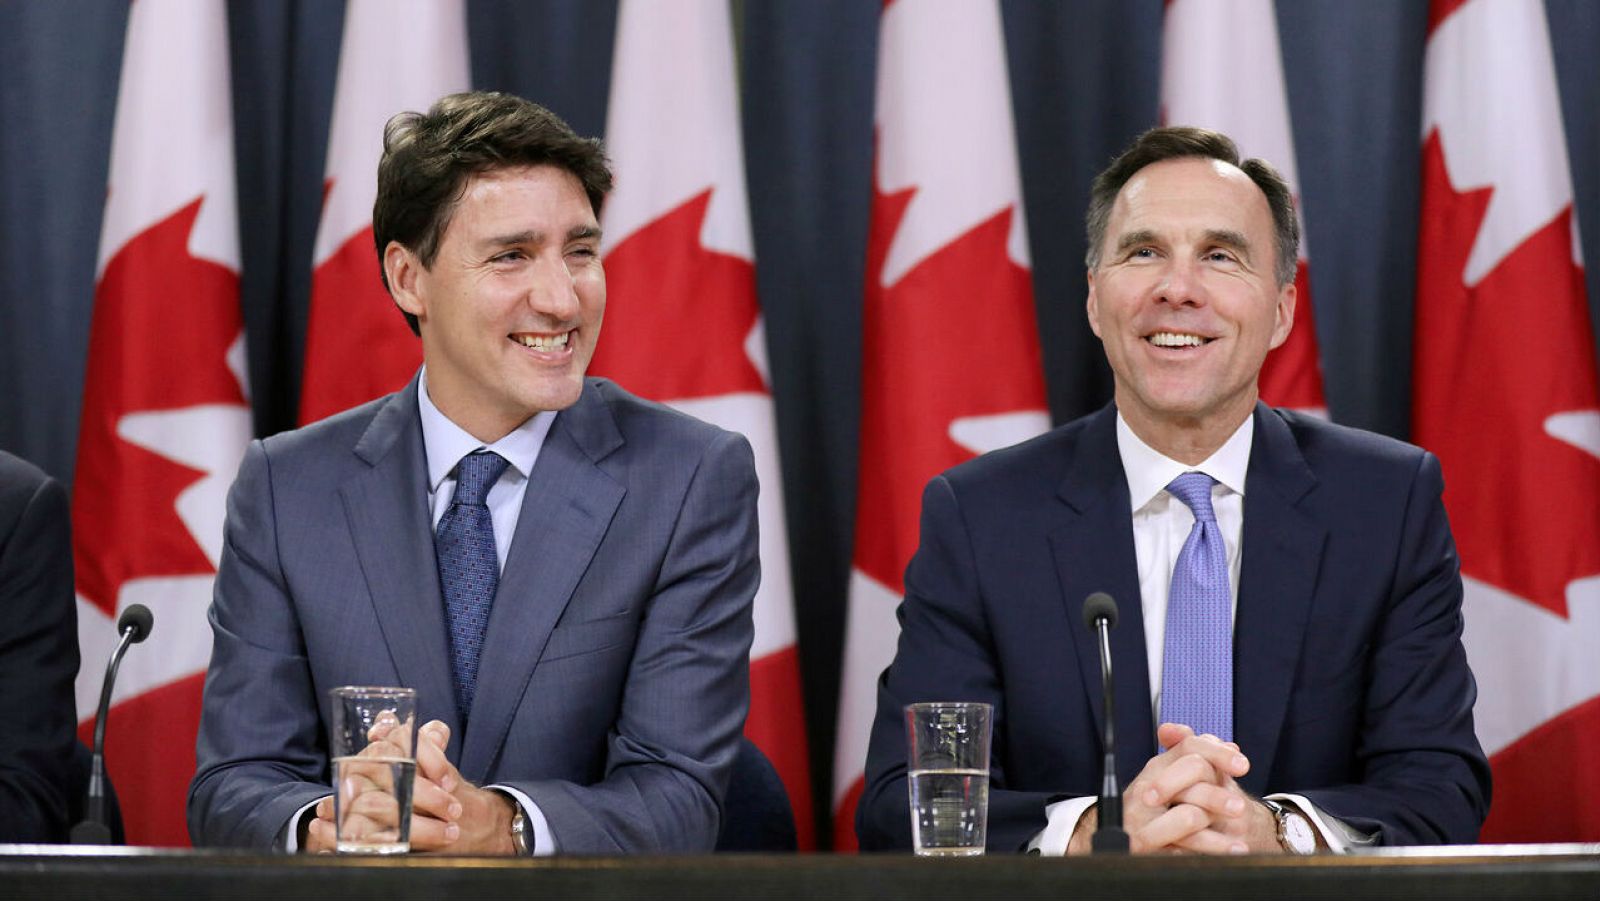 El primer ministro de Canadá, Justin Trudeau, y el ministro de Finanzas, Bill Morneau, durante una conferencia de prensa.